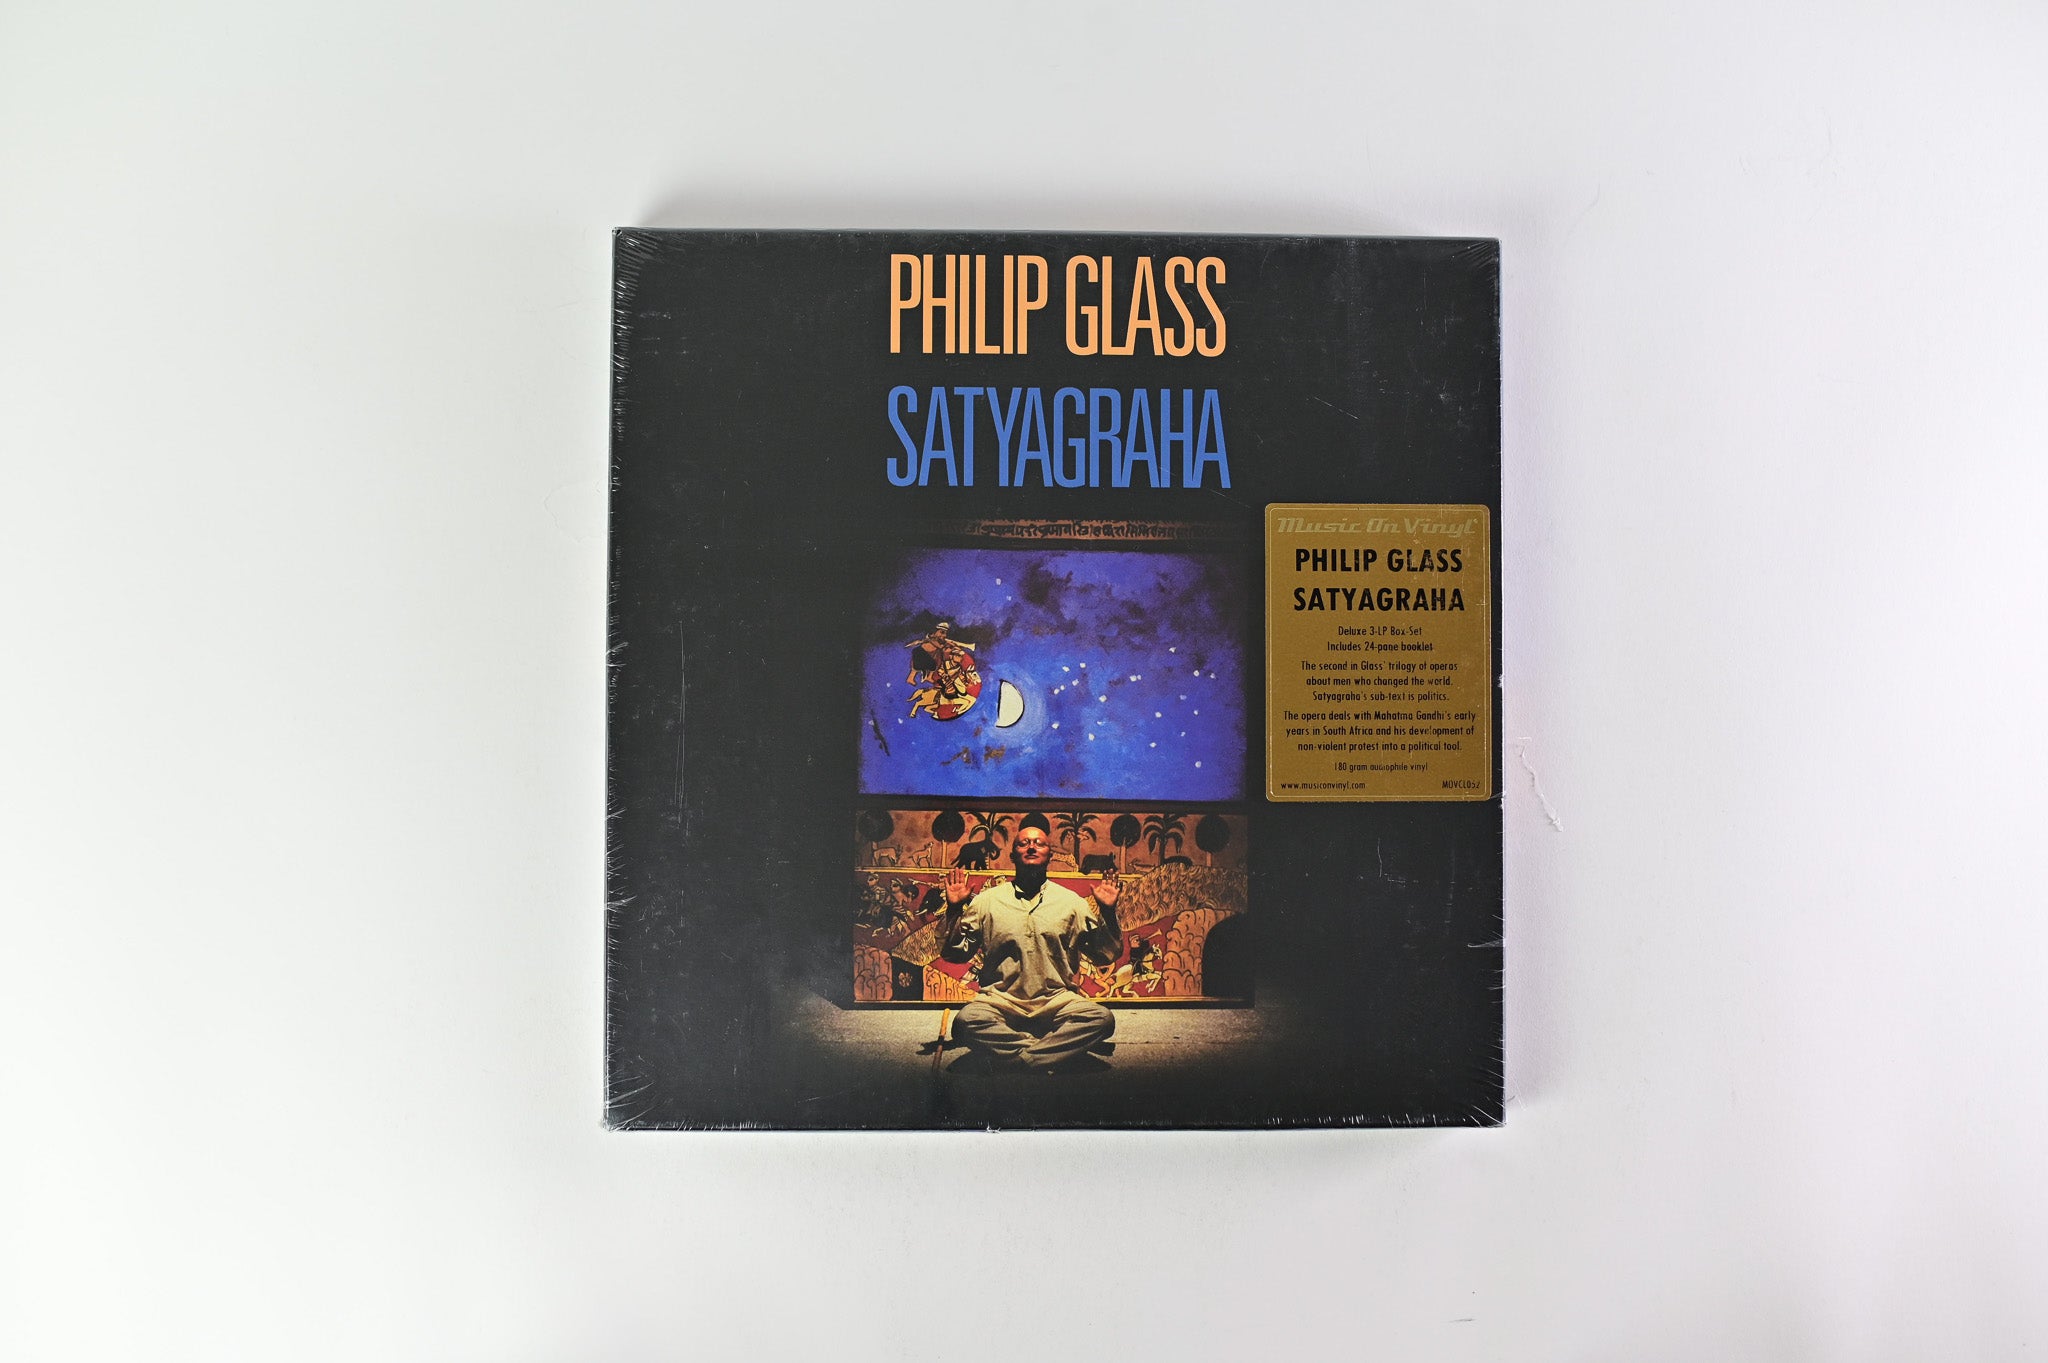 Philip Glass - Satyagraha on Music on Vinyl Ltd 180 Gram Box Set Reissue Sealed